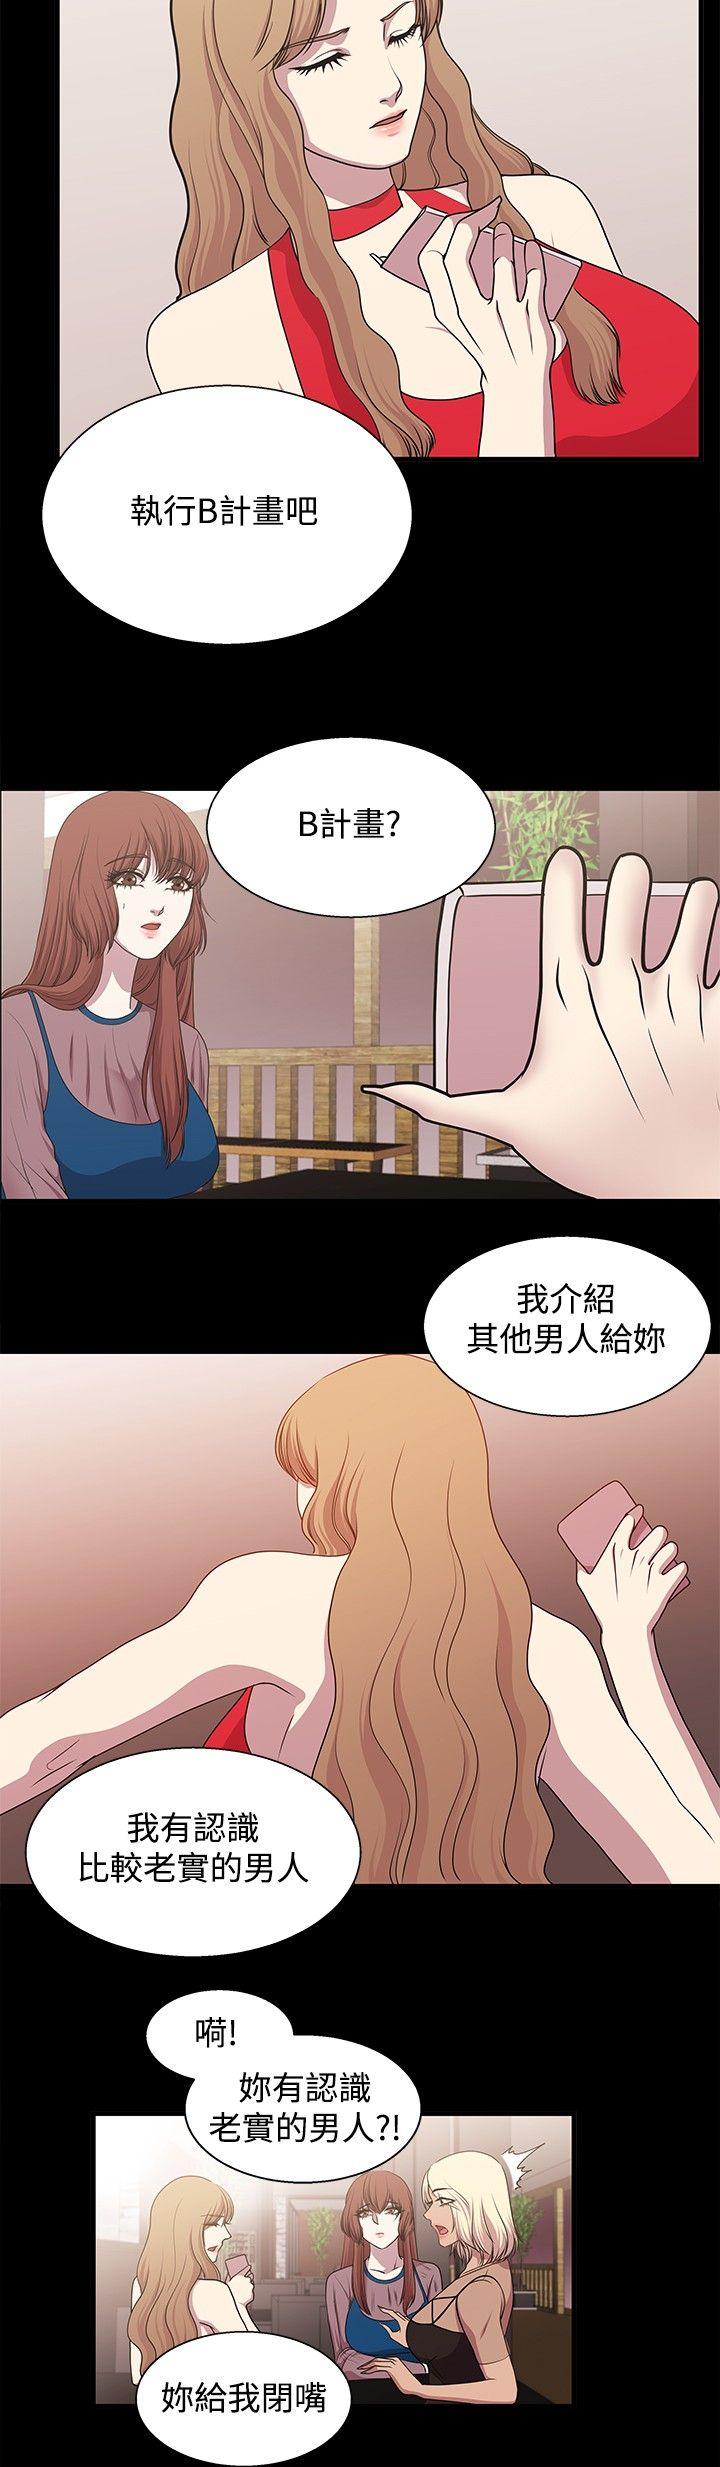 韩国污漫画 贊助者 第19话 10